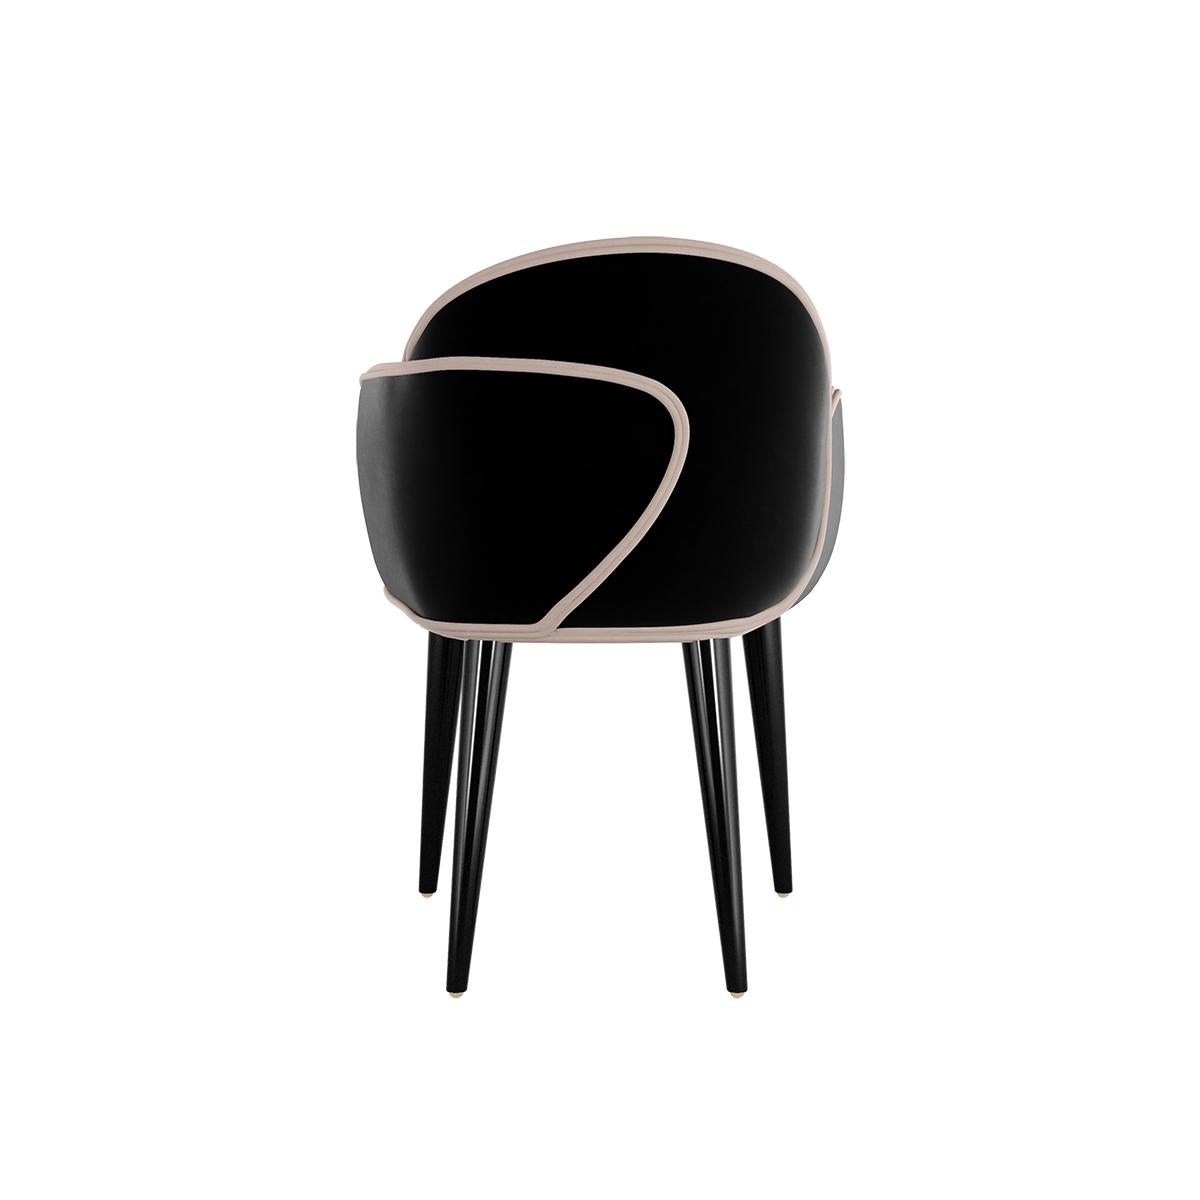 Scille Dining Chair ist ein luxuriöser Sessel mit einer asymmetrischen Sitzfläche, die aus sich überschneidenden, kurvigen Paneelen besteht. Ein origineller und komfortabler Esszimmerstuhl mit Samtbezug, ideal für ein modernes